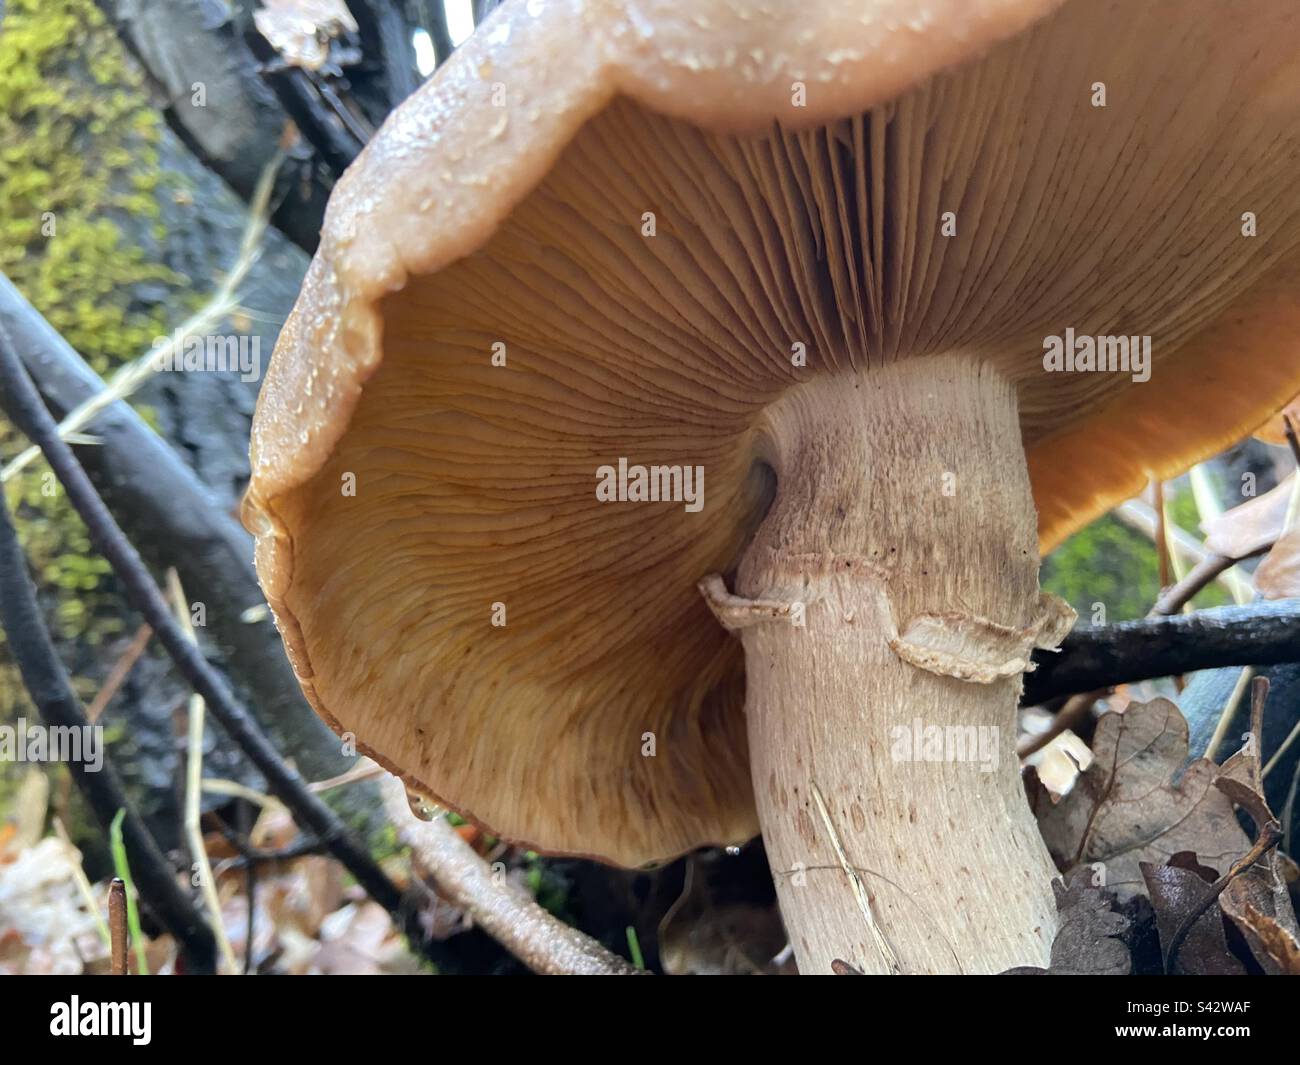 Honey mushroom Stock Photo